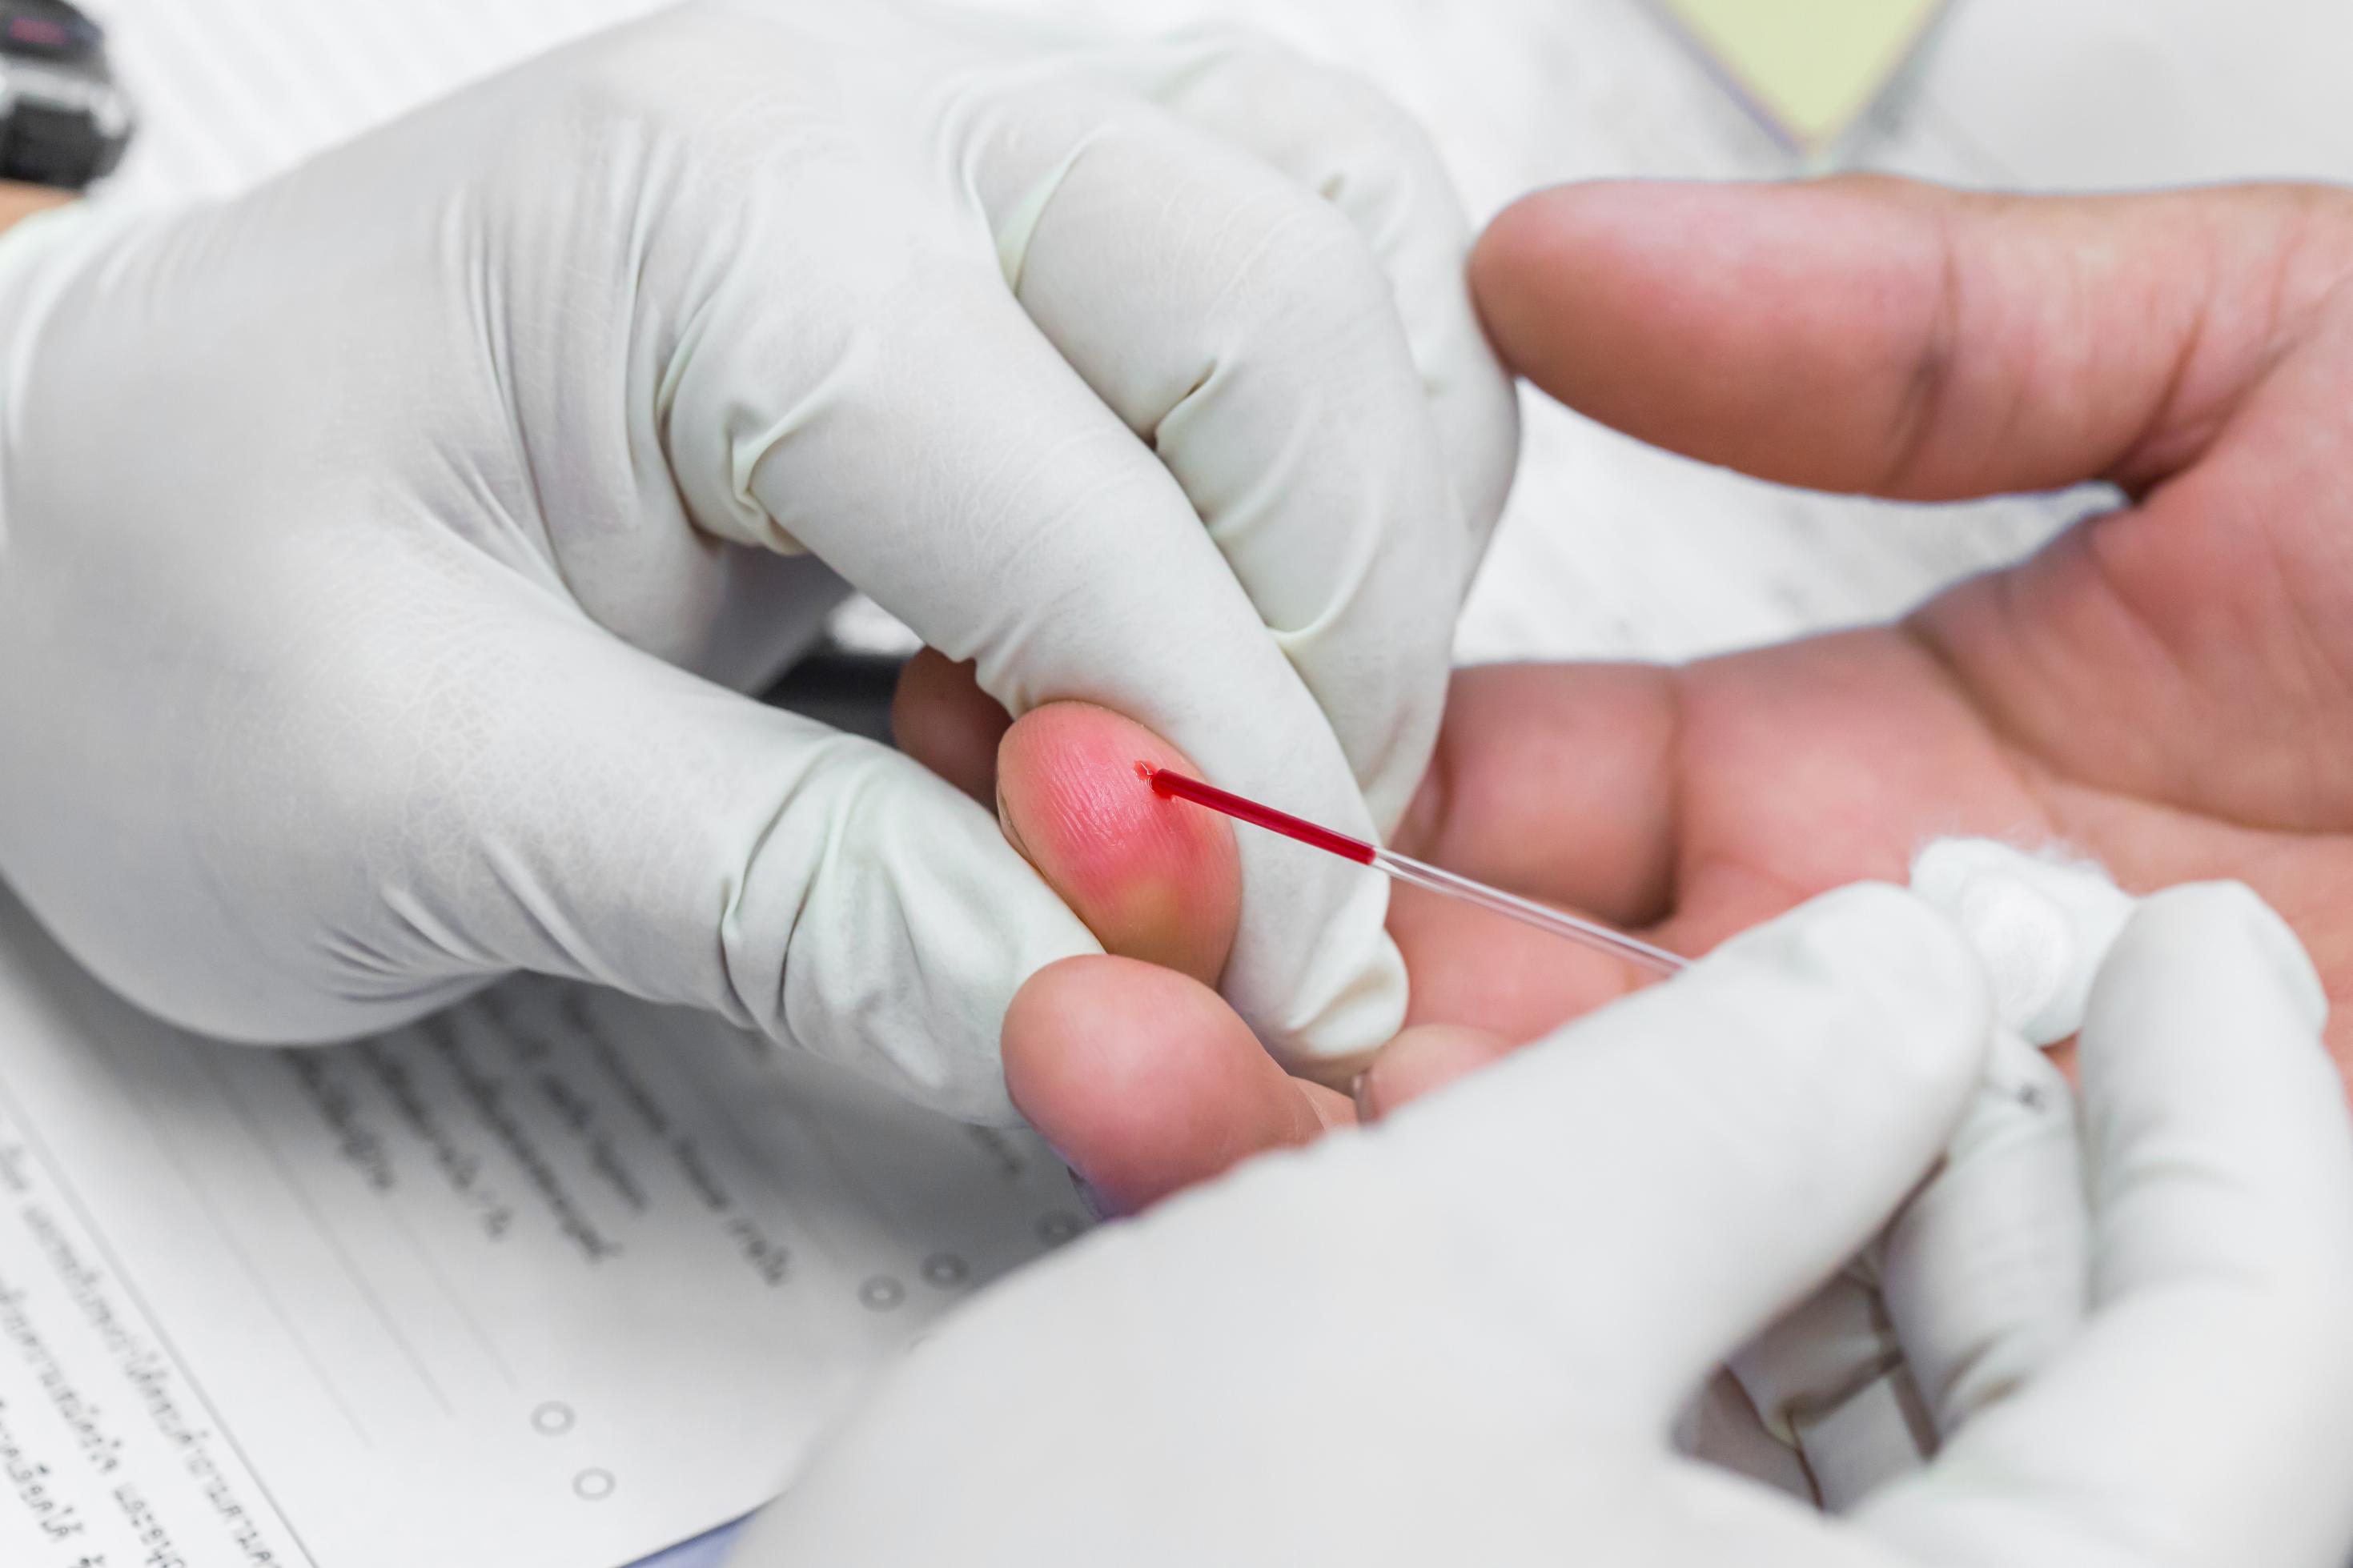 Eine medizinische Fachperson mit weißen Handschuhen entnimmt bei einer anderen Person aus dem Finger einen Bluttropfen mithilfe eines Kapillarröhrchens.